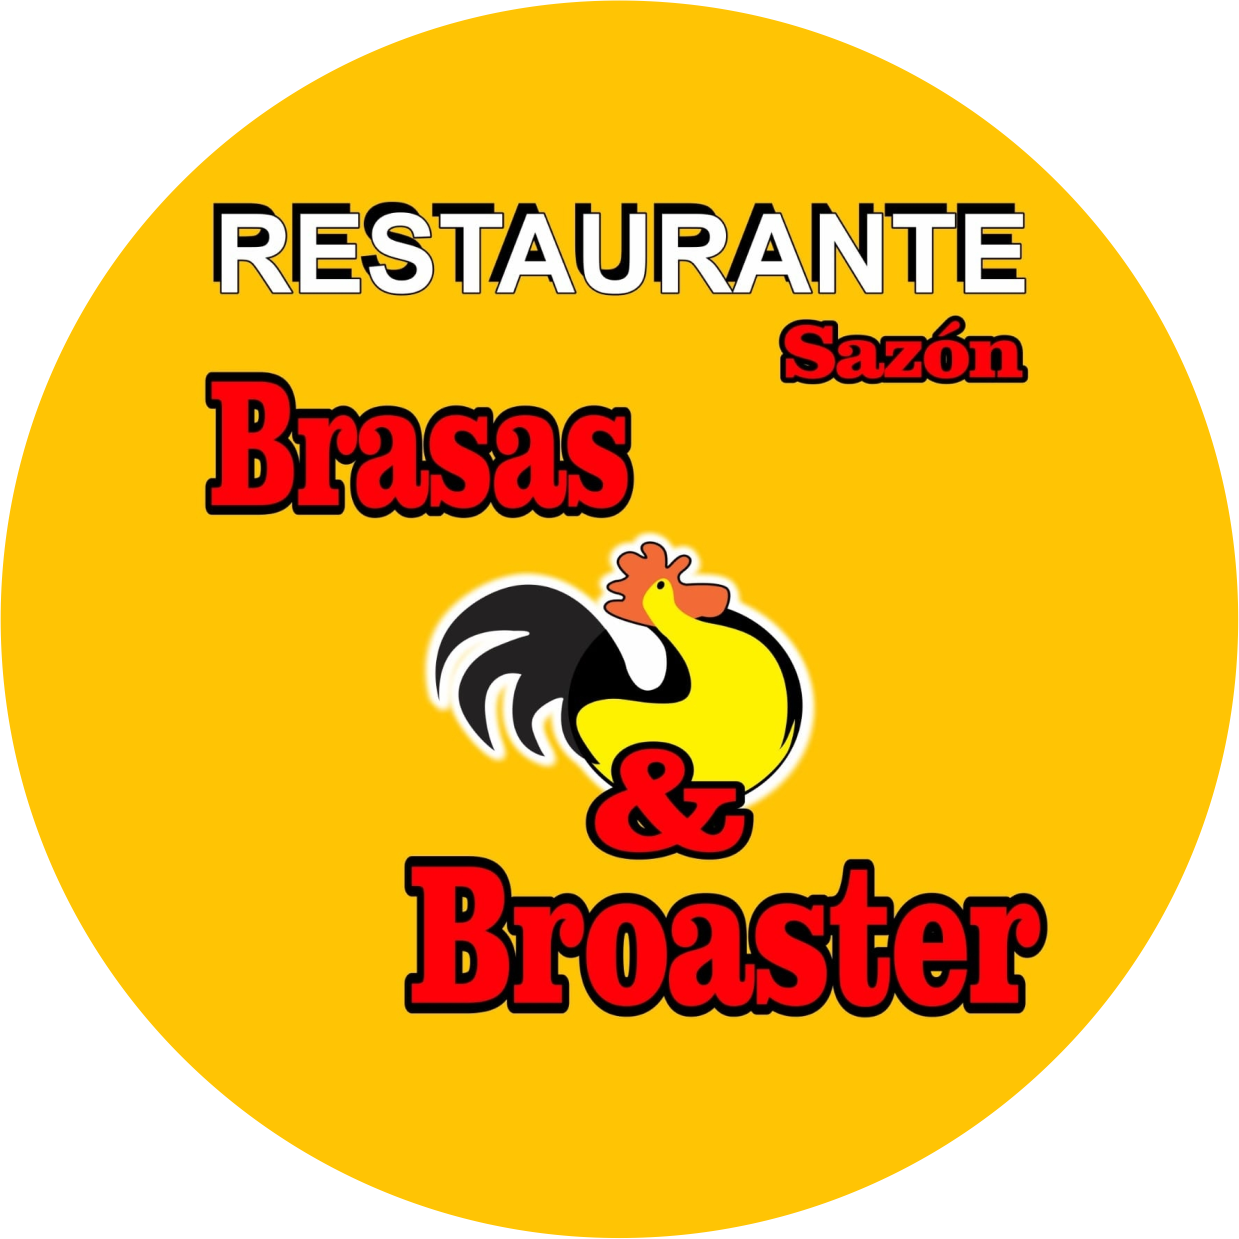 Sazón Brasas & Broaster Viota